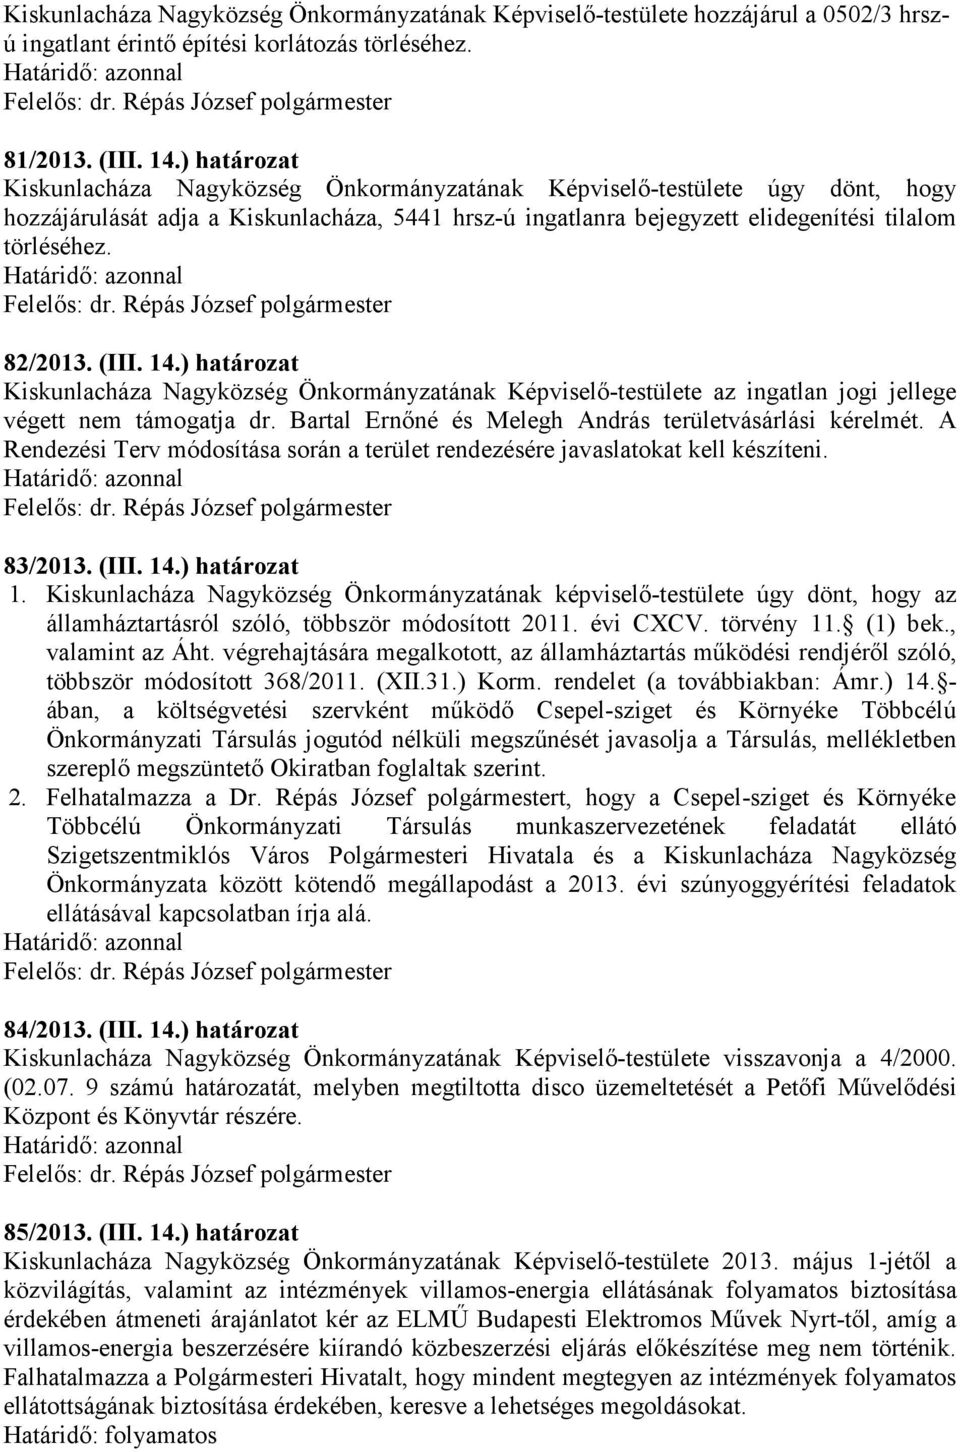 82/2013. (III. 14.) határozat Kiskunlacháza Nagyközség Önkormányzatának Képviselő-testülete az ingatlan jogi jellege végett nem támogatja dr. Bartal Ernőné és Melegh András területvásárlási kérelmét.